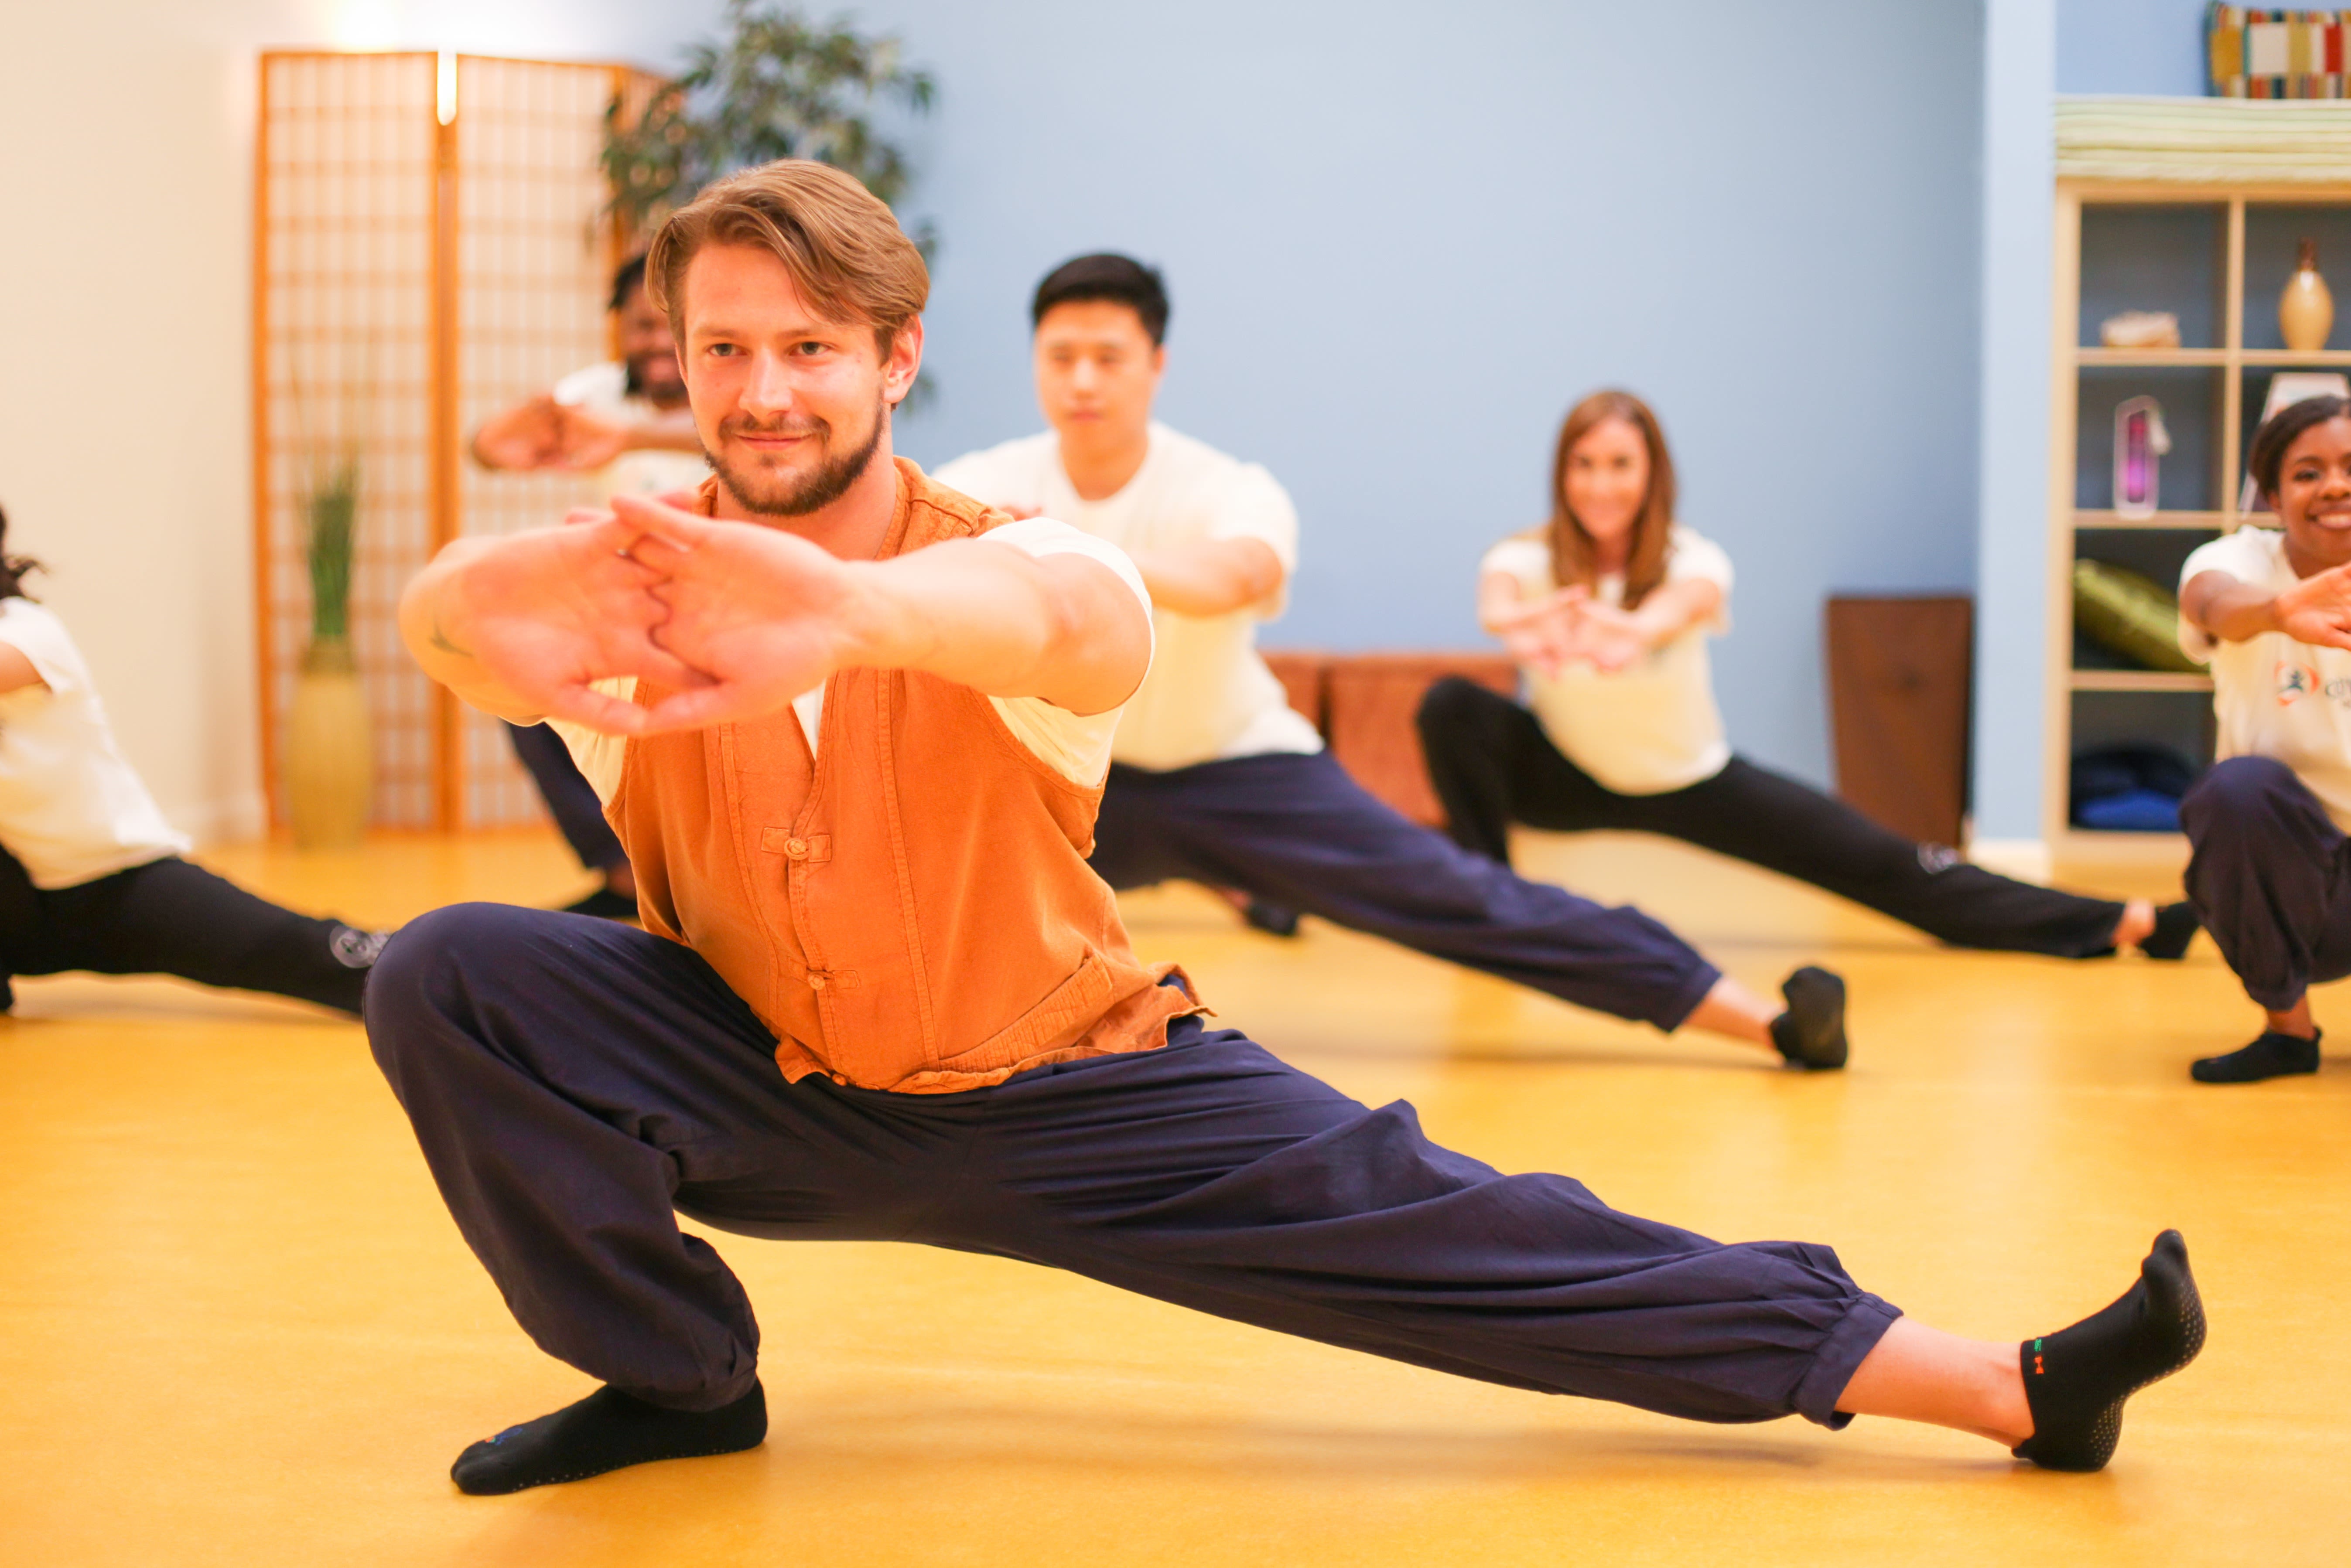 Body & Brain Yoga·Tai Chi - Brea: Read Reviews and Book Classes on